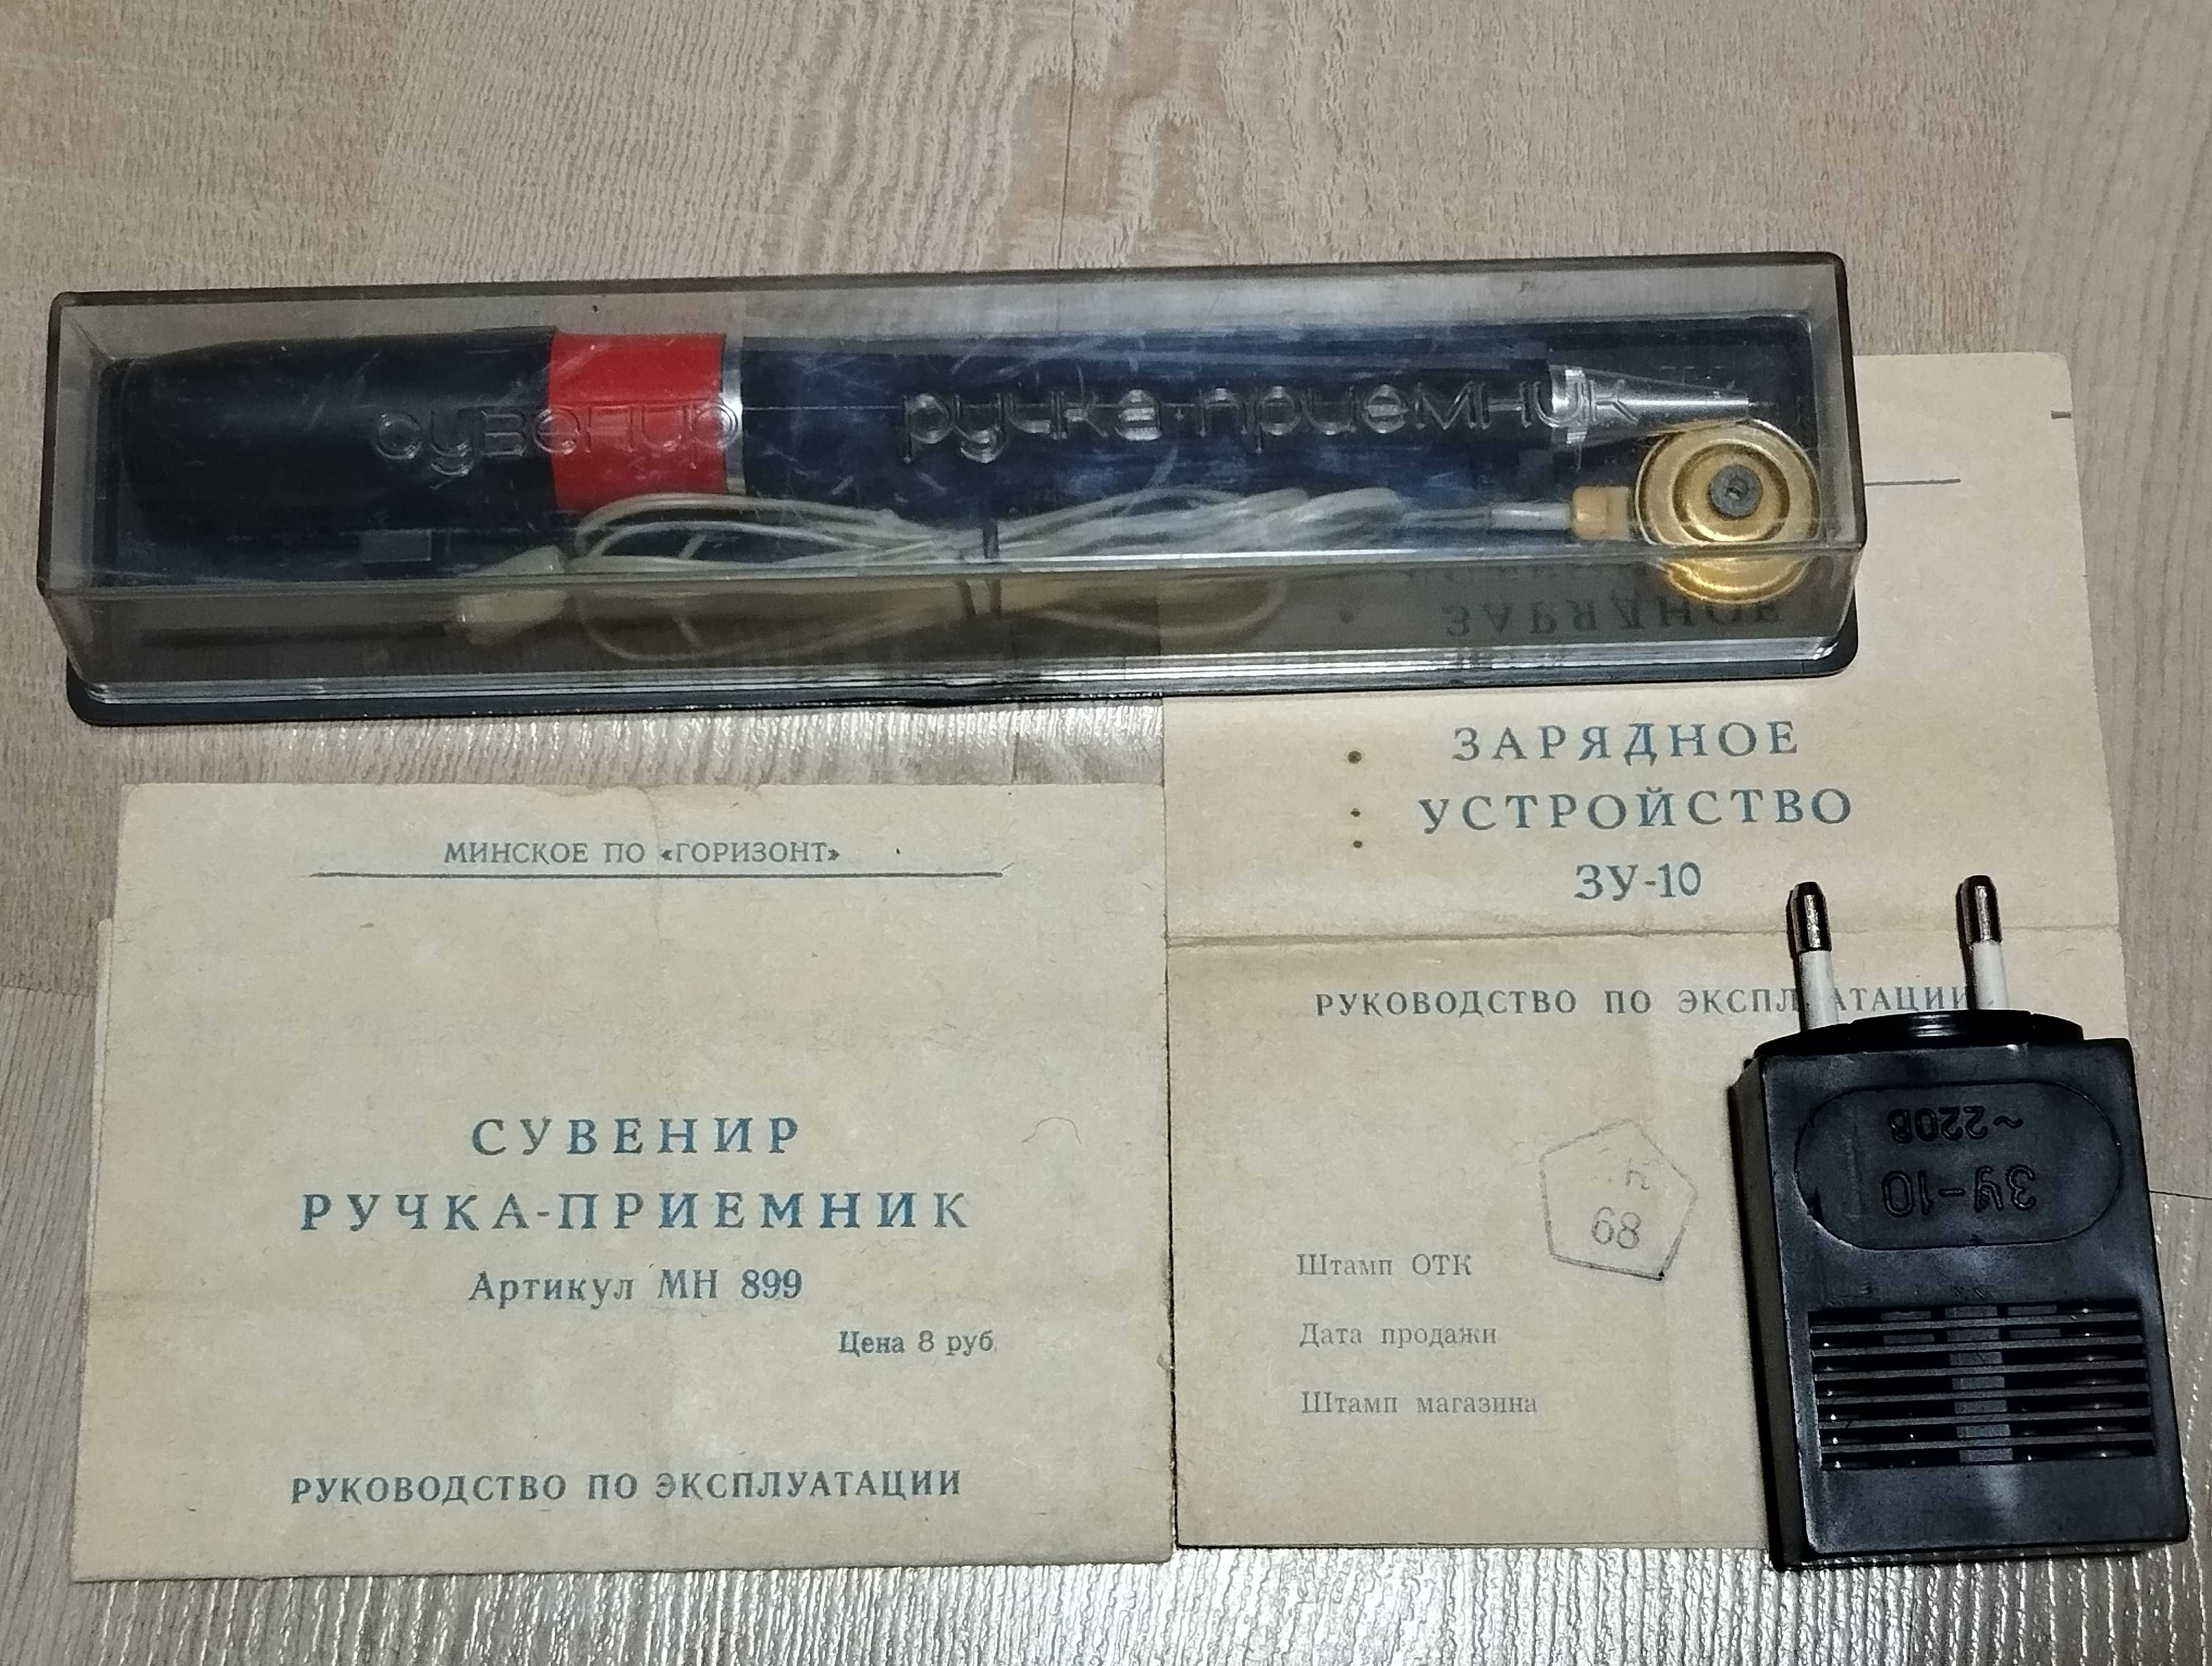 Сувенир ручка приемник СССР